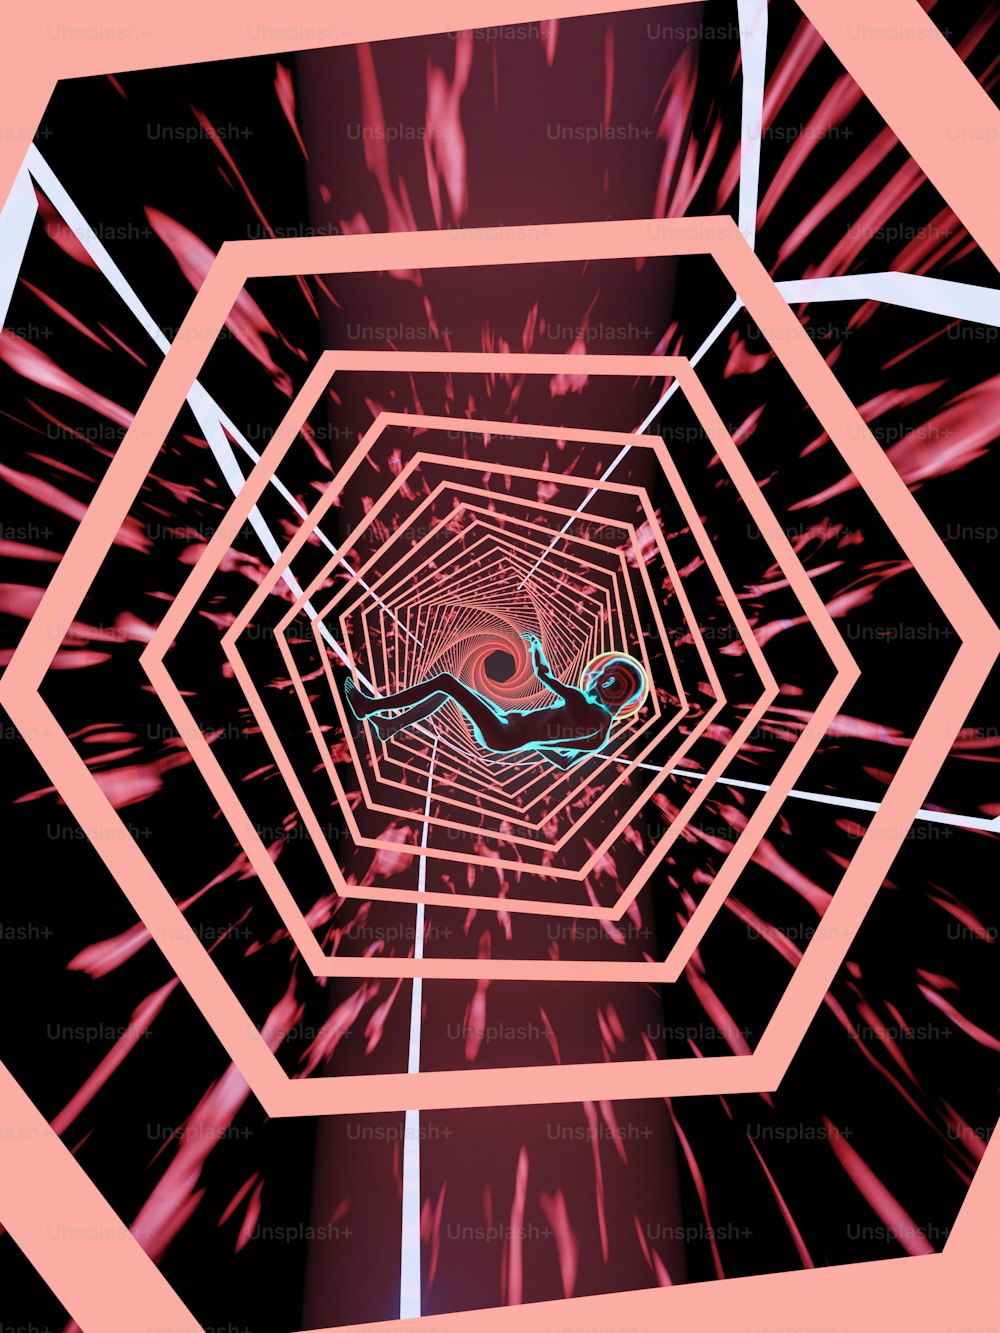 Una imagen abstracta de una persona en un túnel